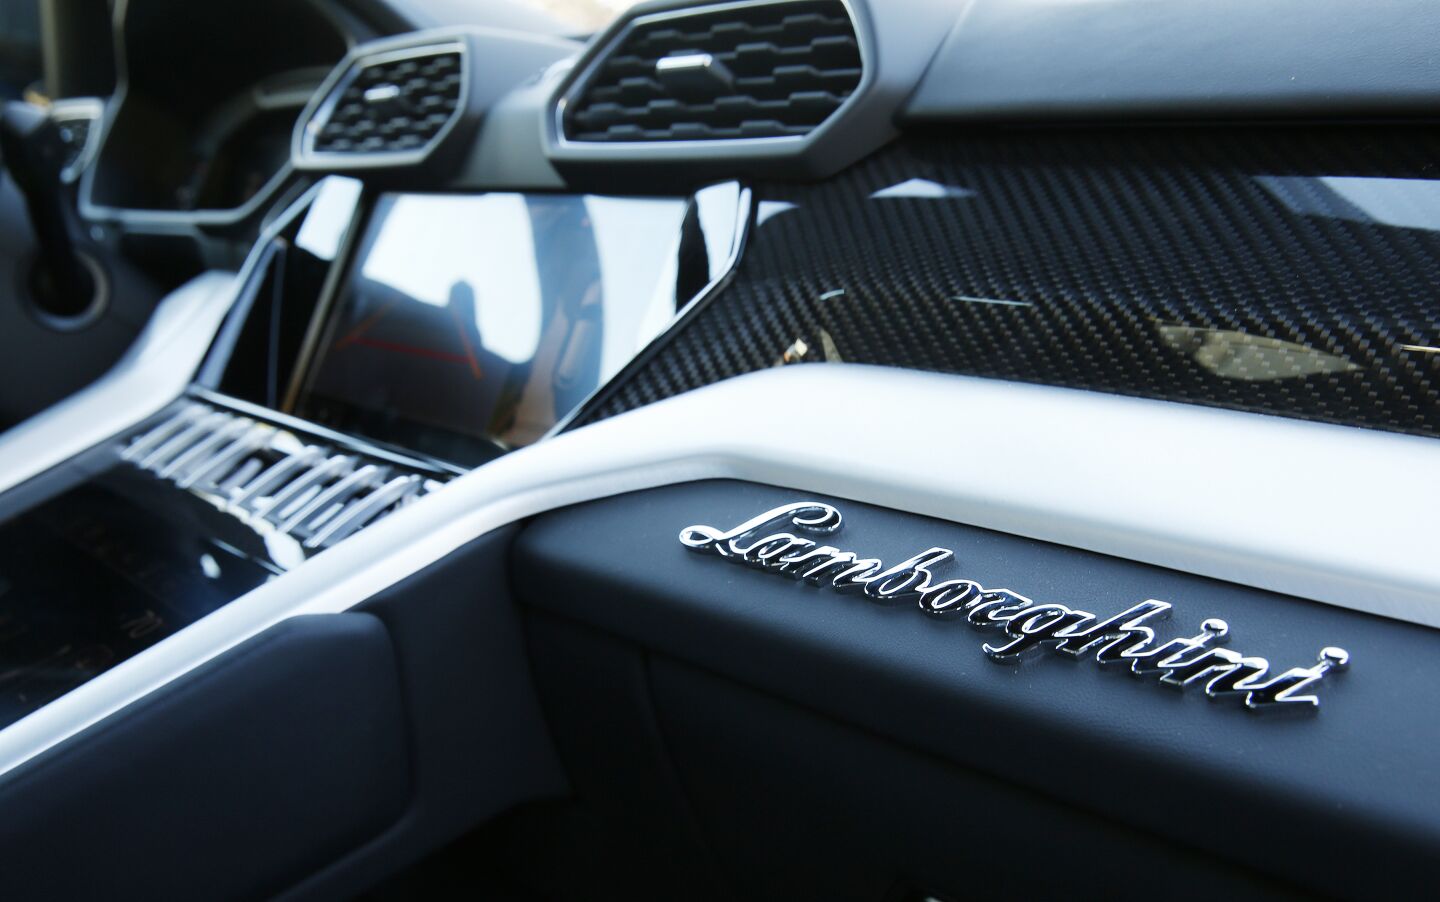 The Urus' interior with "Lamborghini" in silver script above the glove compartment.